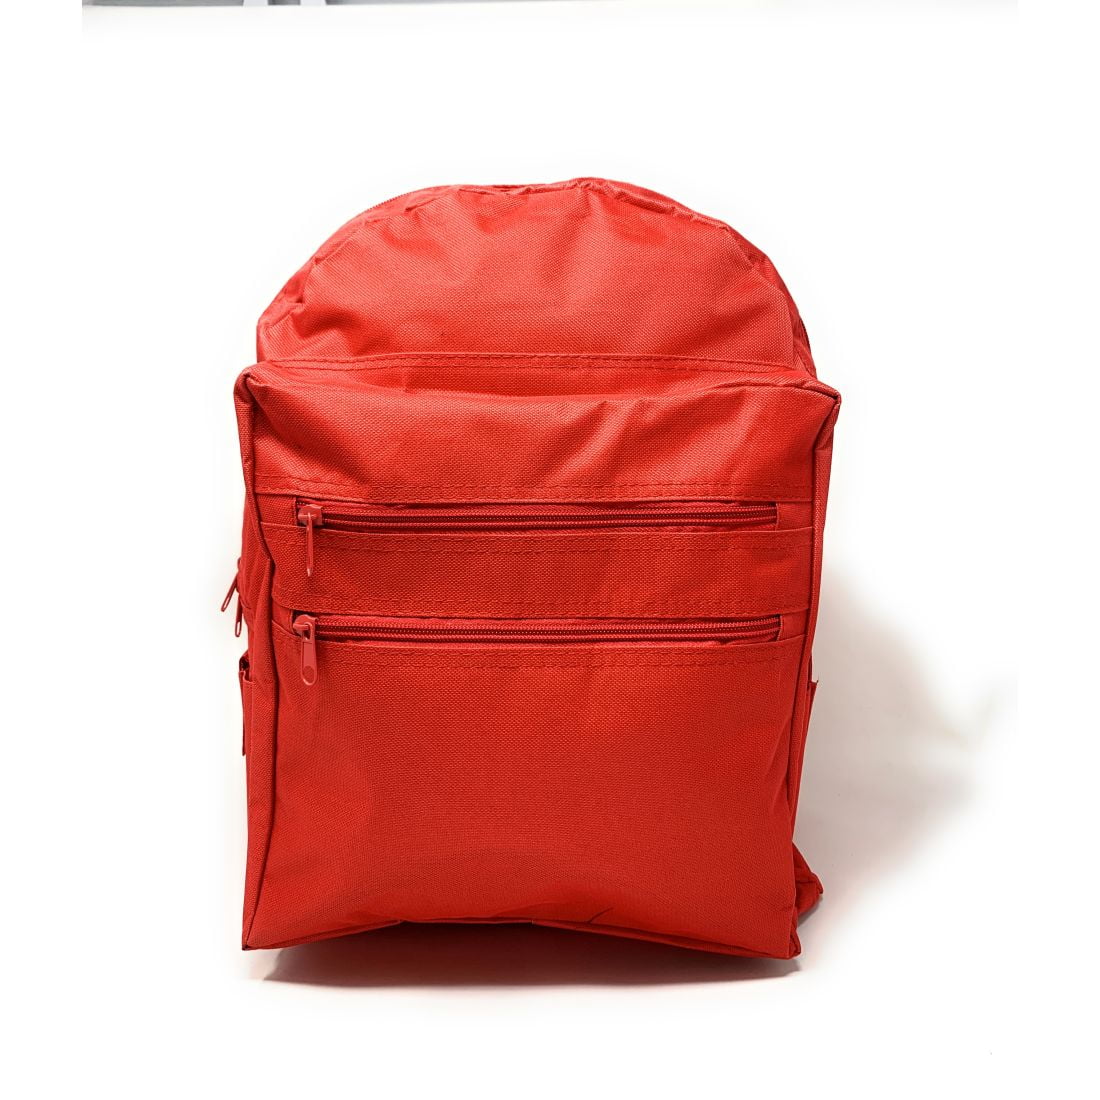 Berries Red Ripe Bookbag School Backpack Luggage Travel Sport Bag